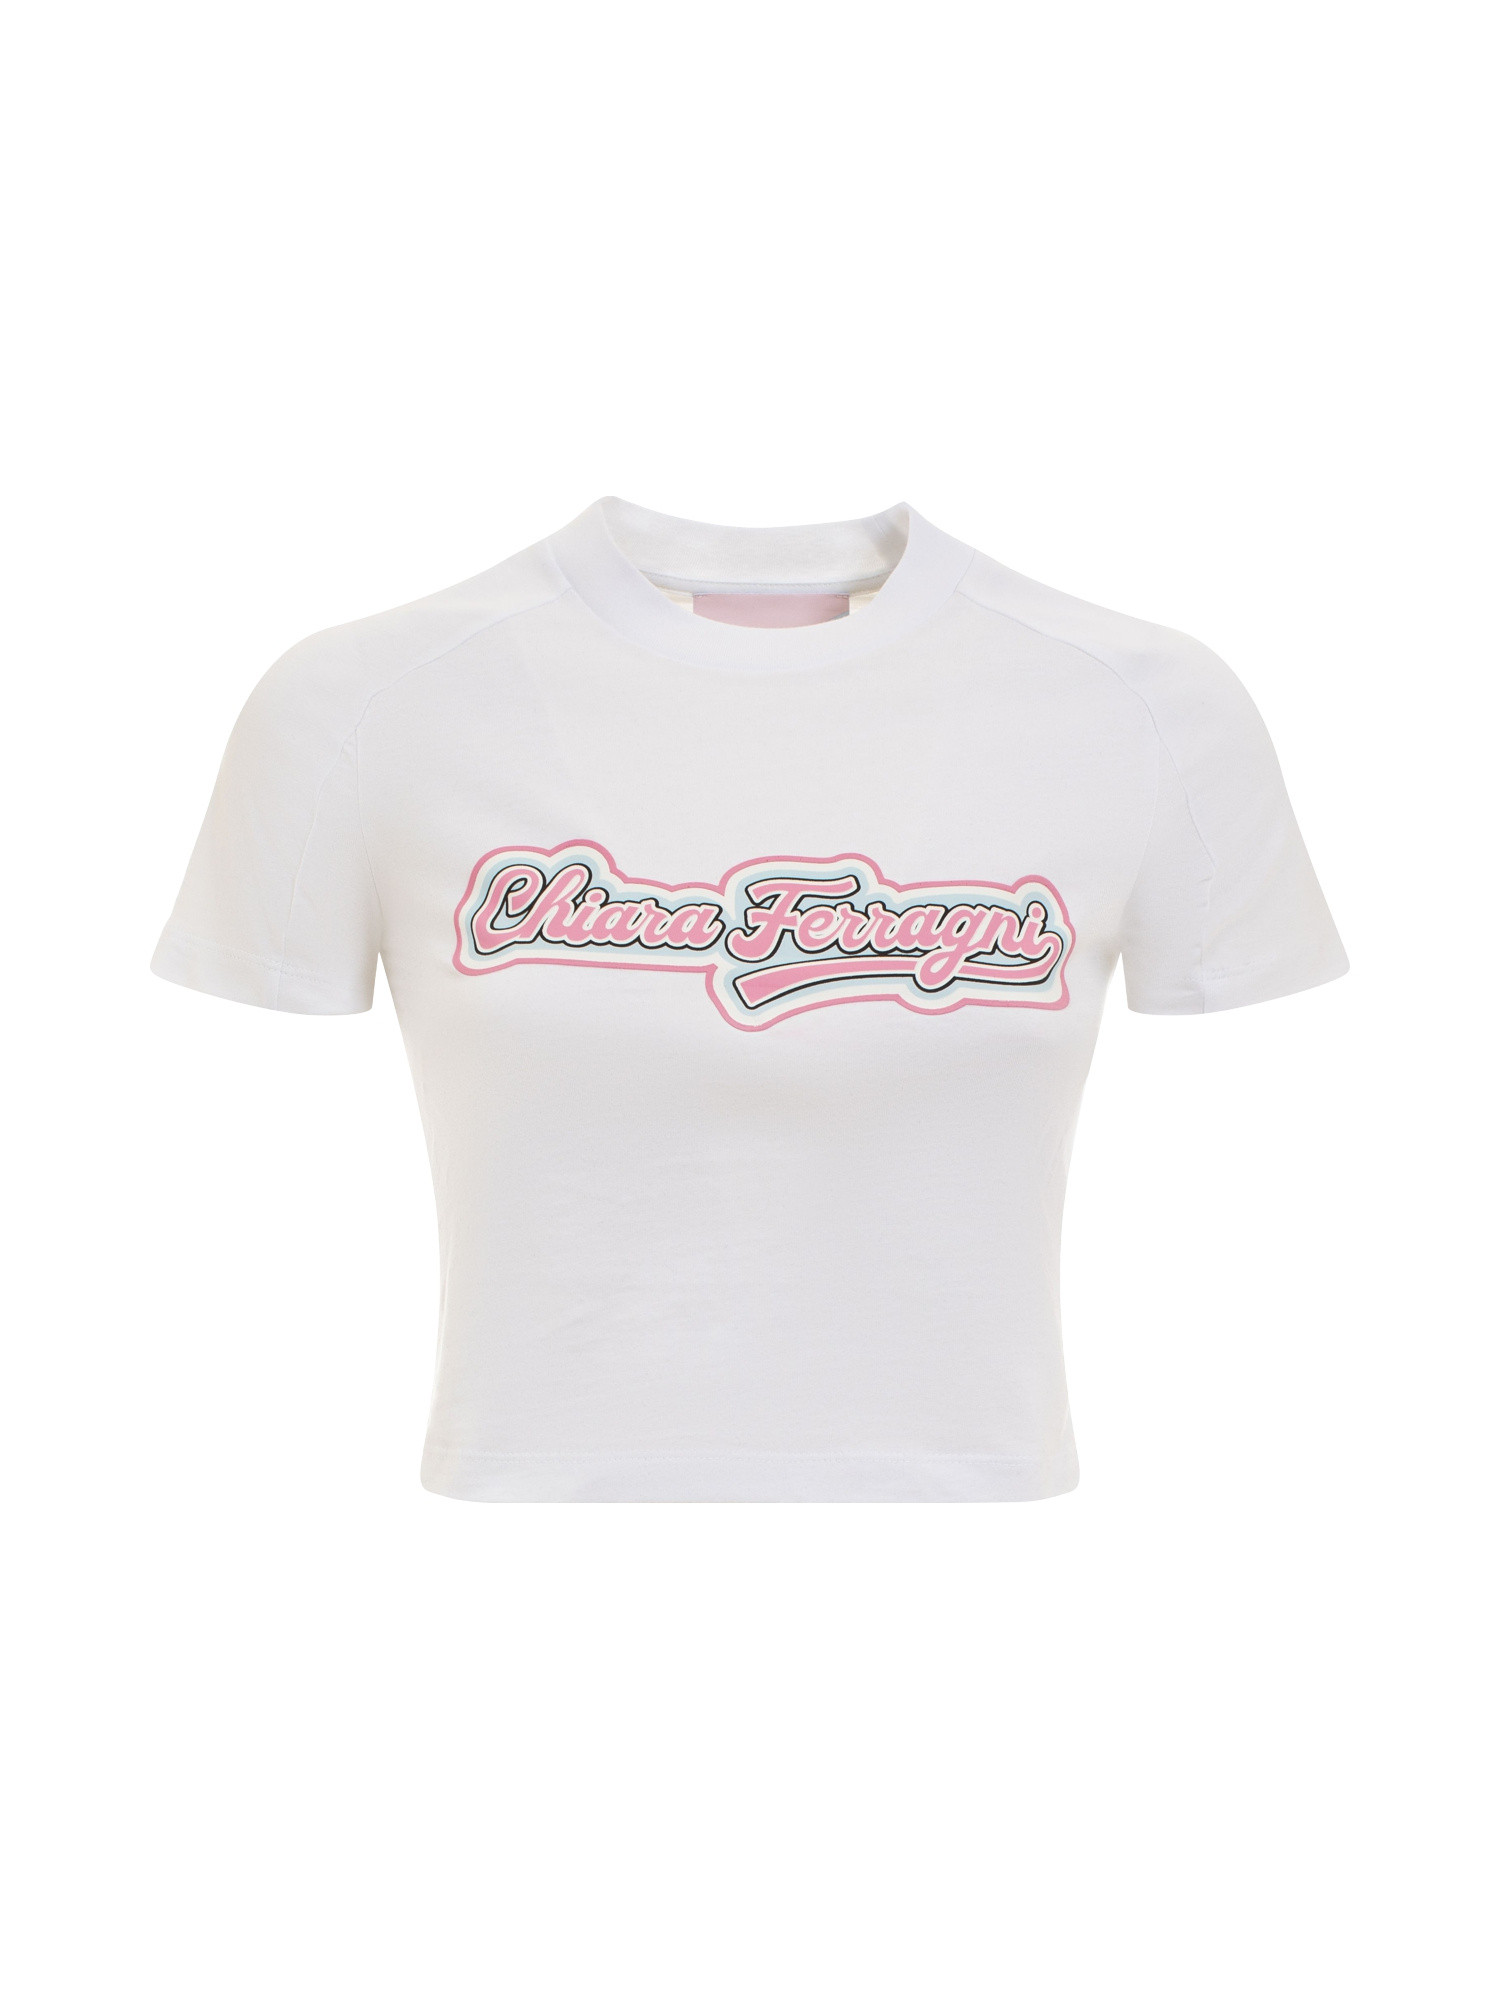 Chiara Ferragni - T-shirt cropped con stampa logo, Bianco, large image number 0